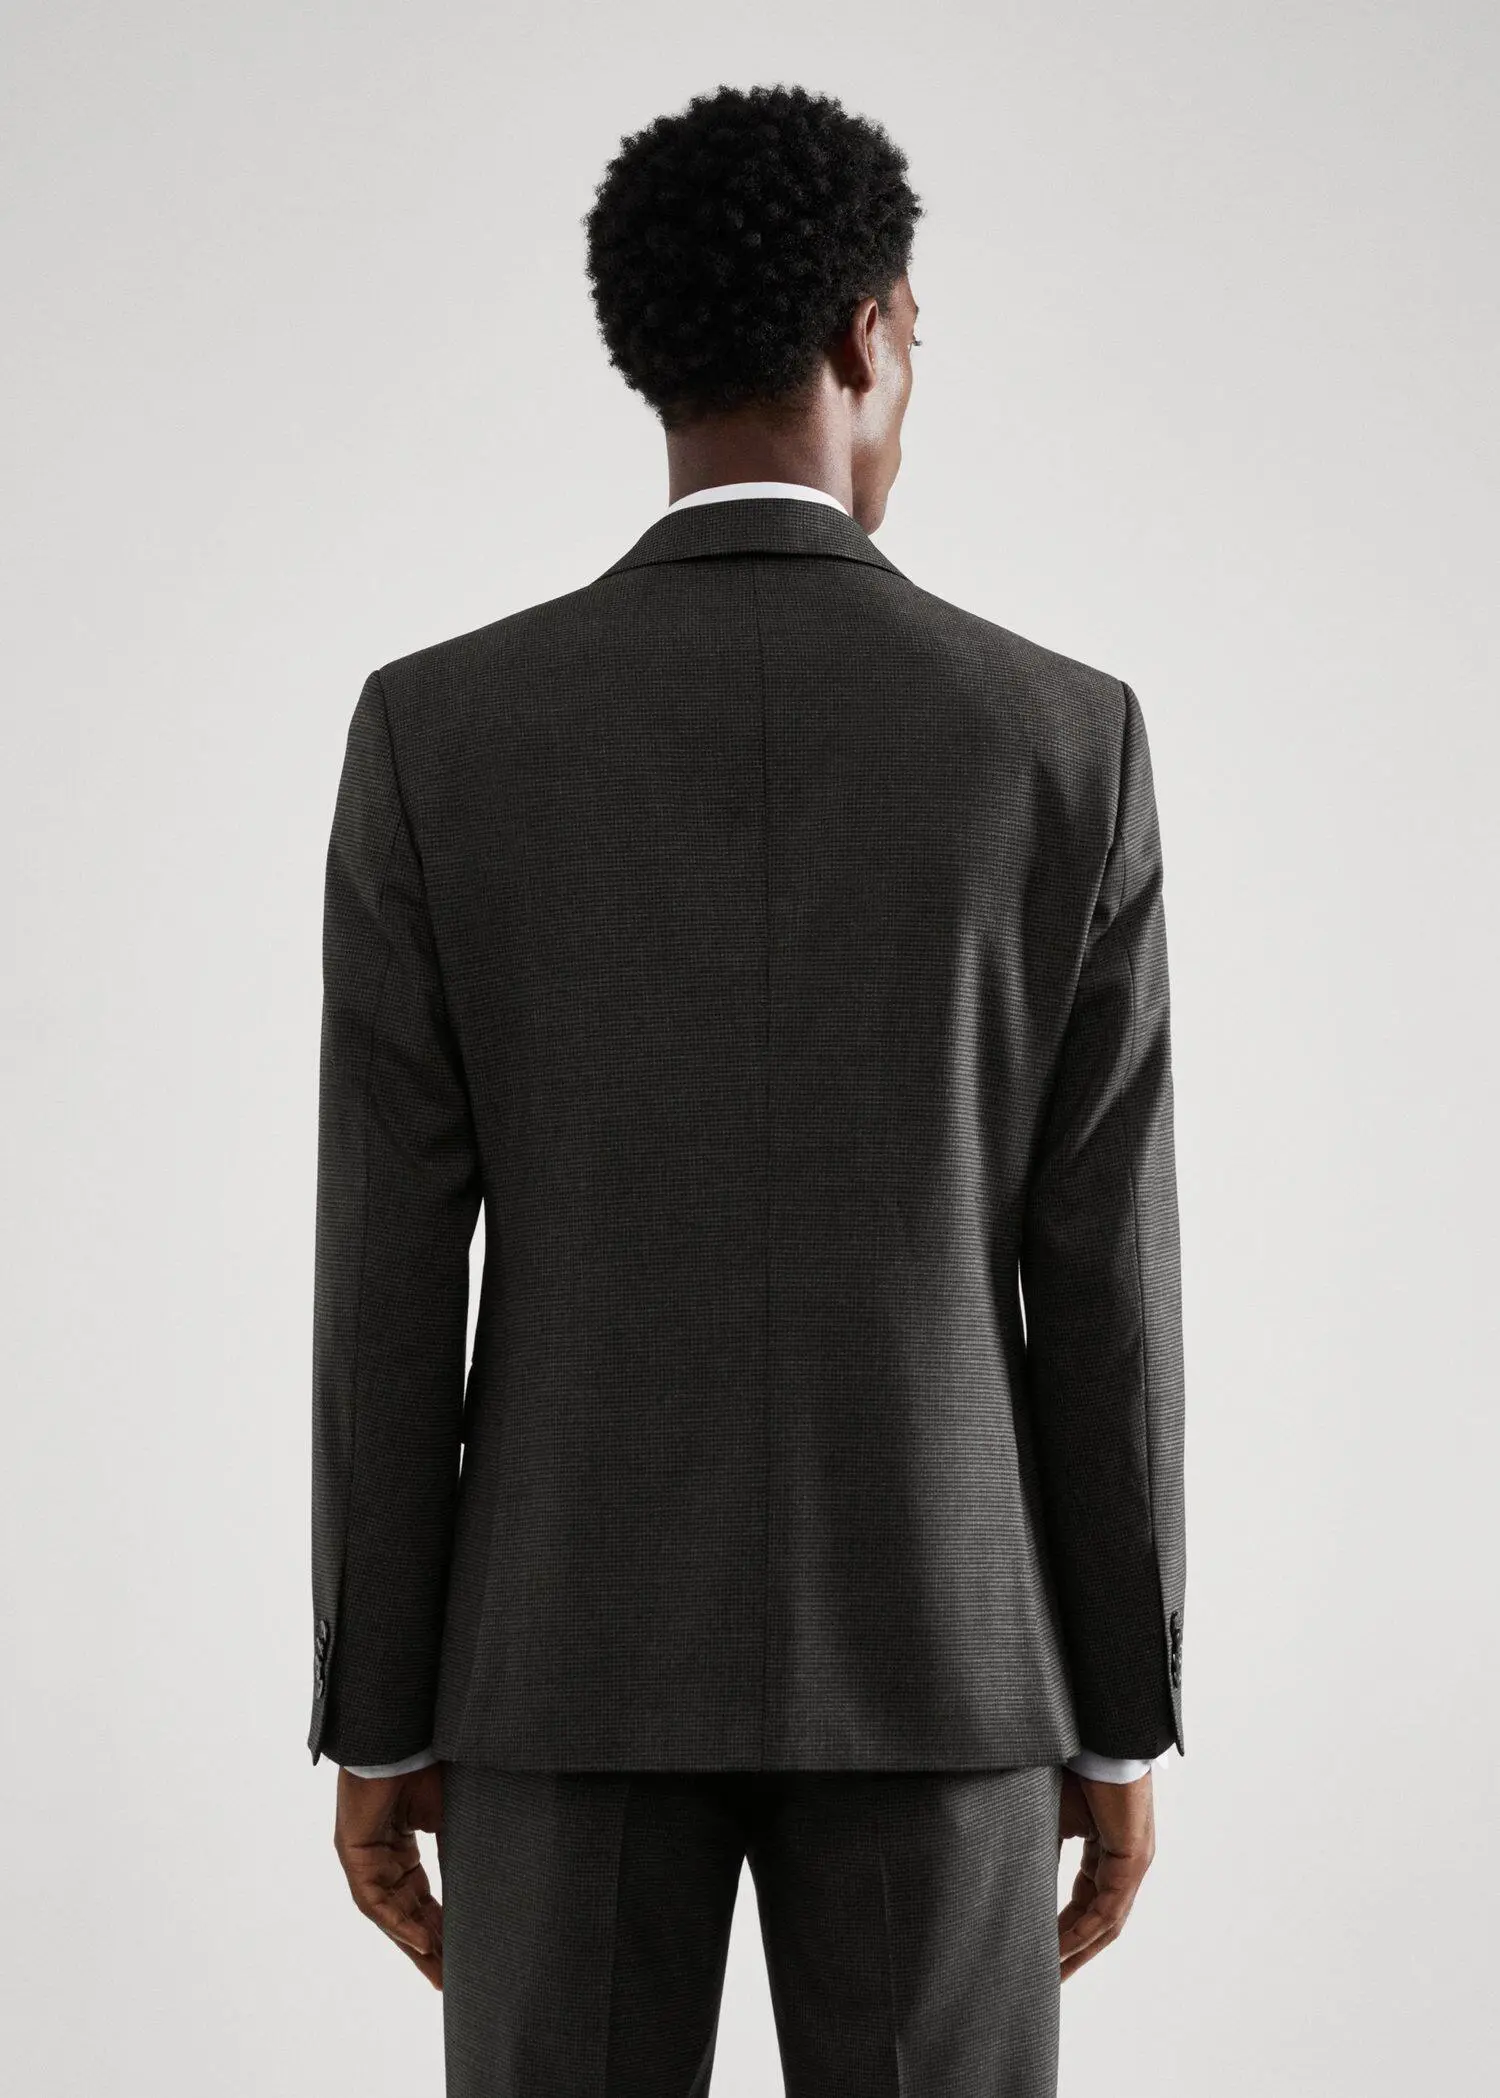 Mango Slim-fit houndstooth wool suit jacket. 3